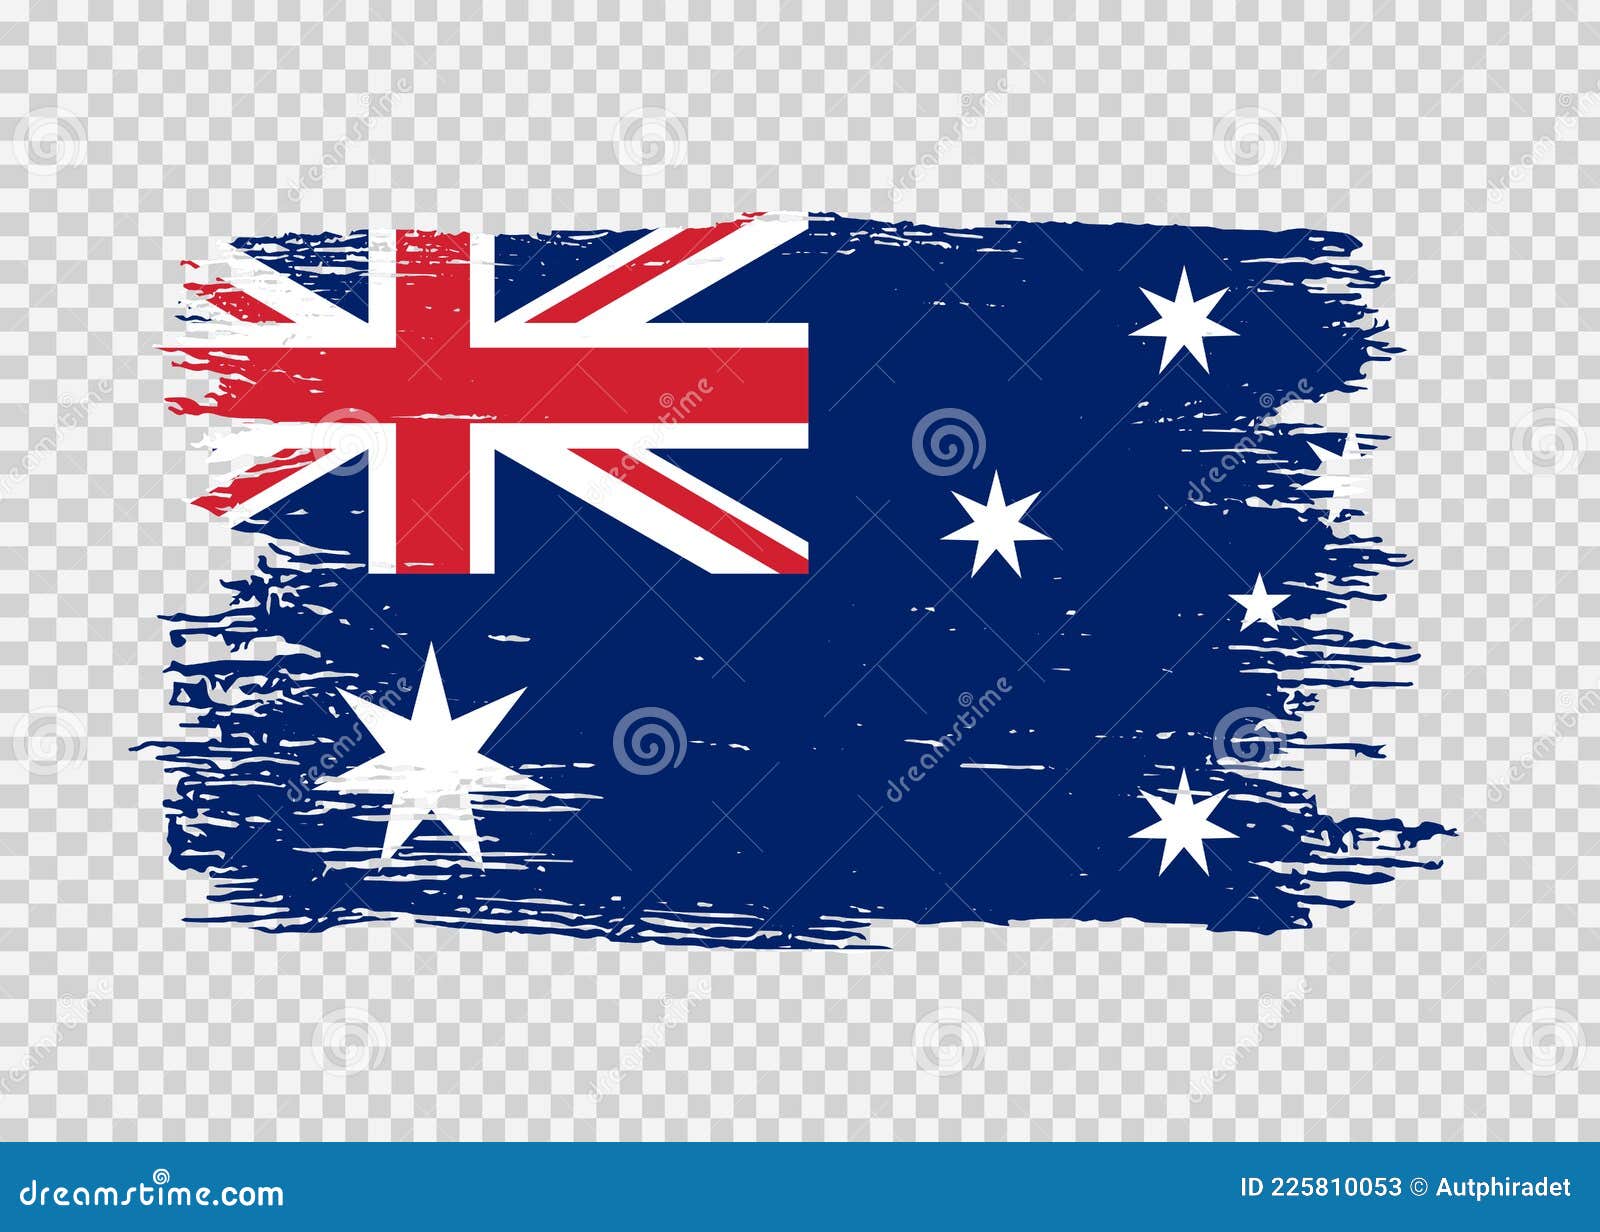 Cờ Australia màu đỏ là một sự lựa chọn rất phổ biến để thể hiện tình yêu và tôn trọng cho quốc gia này. Bức hình liên quan đến cờ màu đỏ sẽ giúp bạn cảm thấy tự hào về đất nước và hiểu được sự đa dạng của văn hóa Úc.